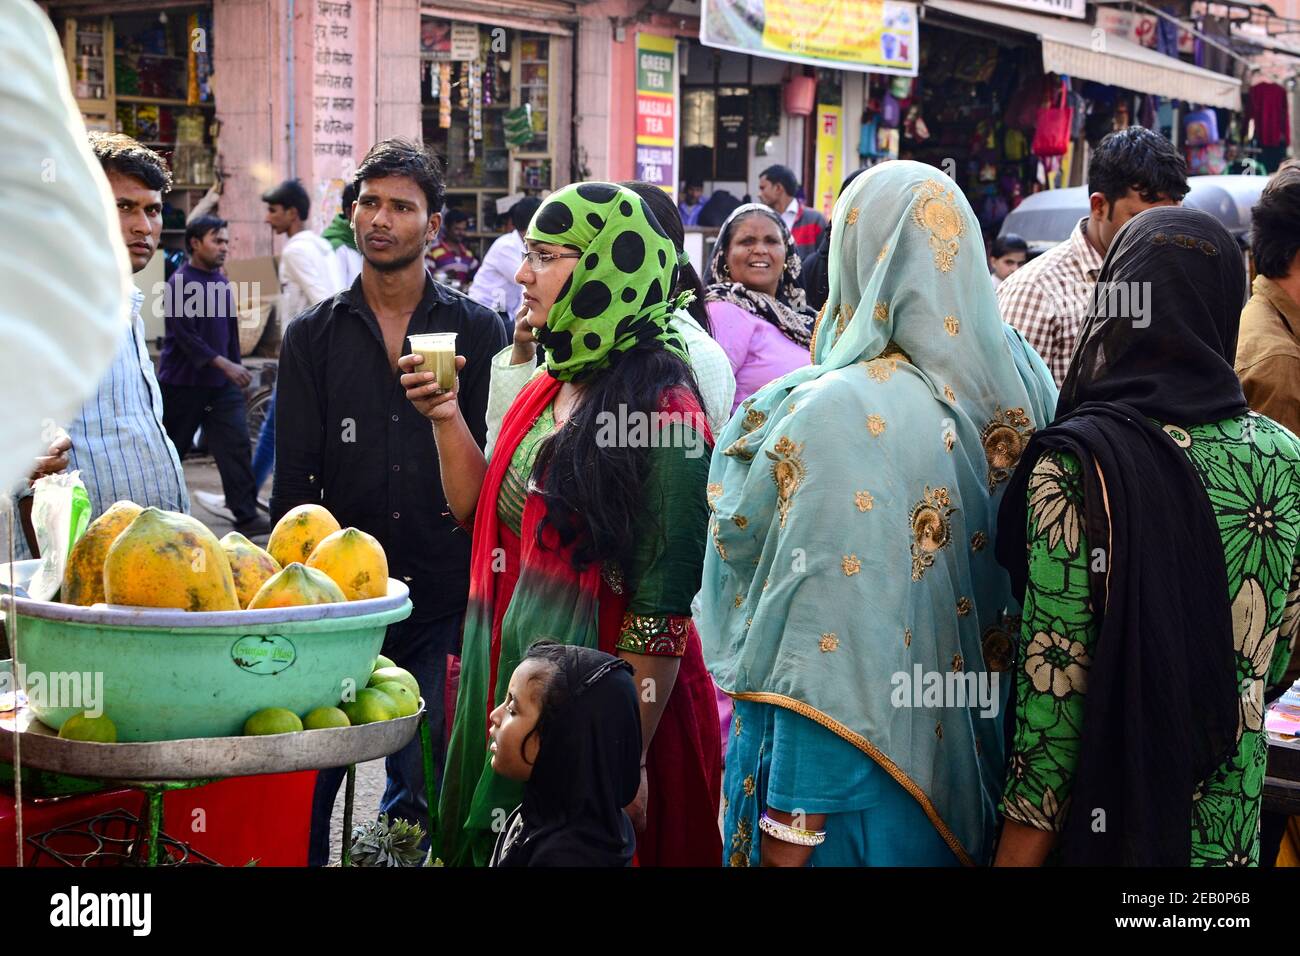 Jaipur, Rajasthan, Inde - novembre, 2016: Une femme indienne dans le hijab a entouré d'autres personnes (hommes et femmes) boit du jus de fruits sur le marché. Banque D'Images